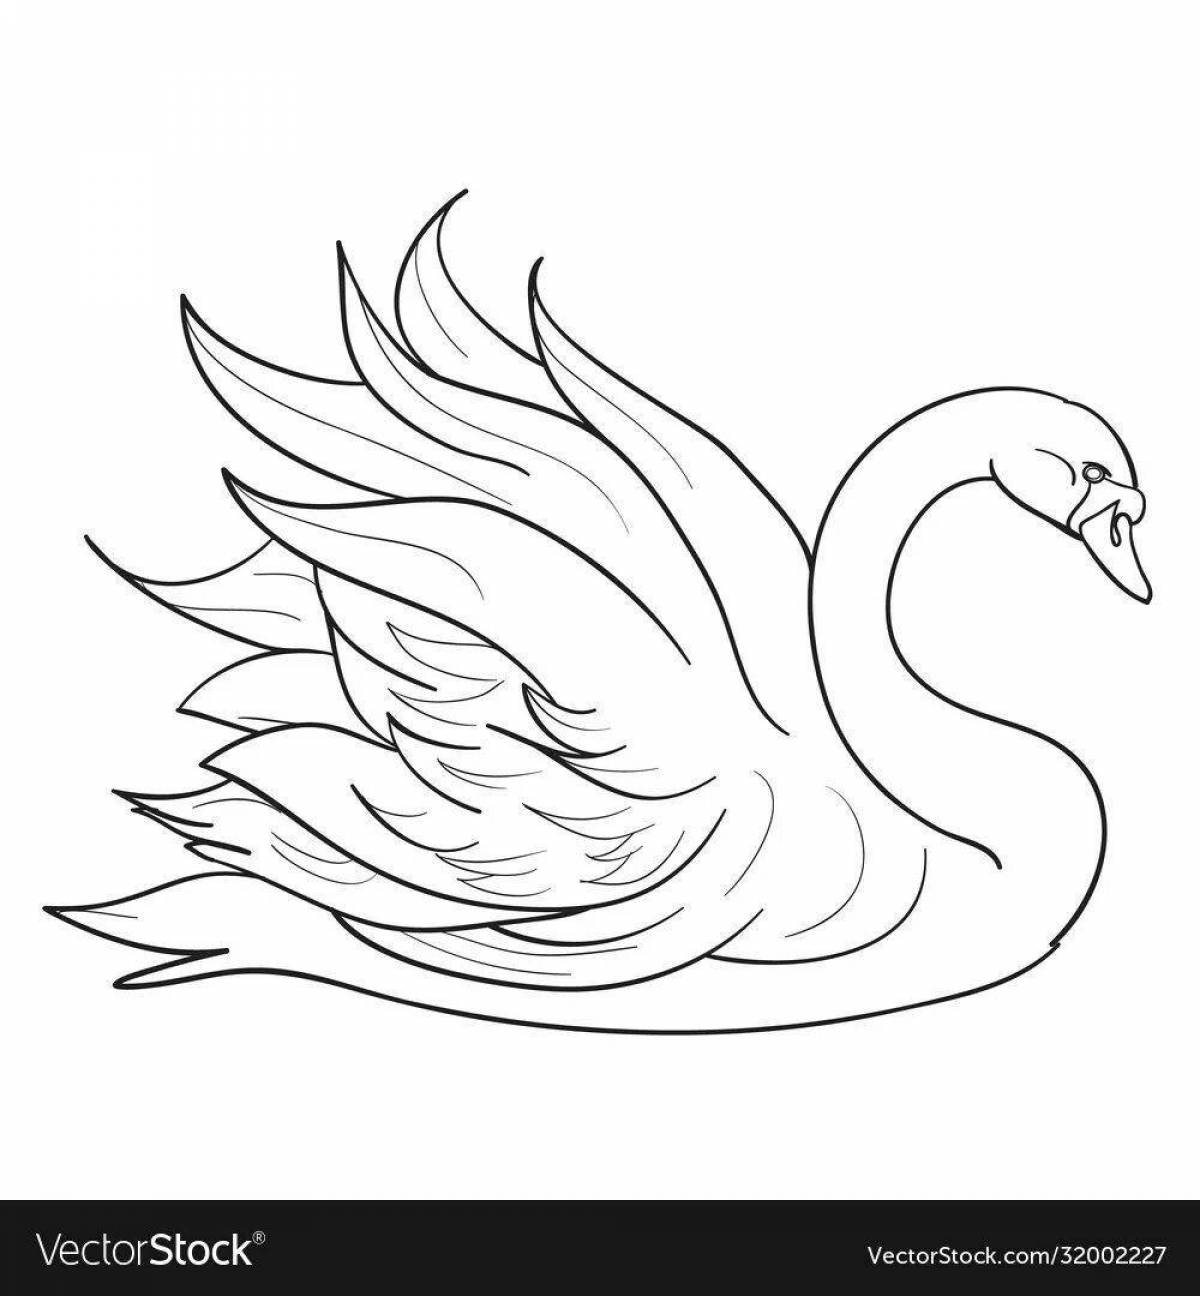 Fun swan lake coloring book for beginners